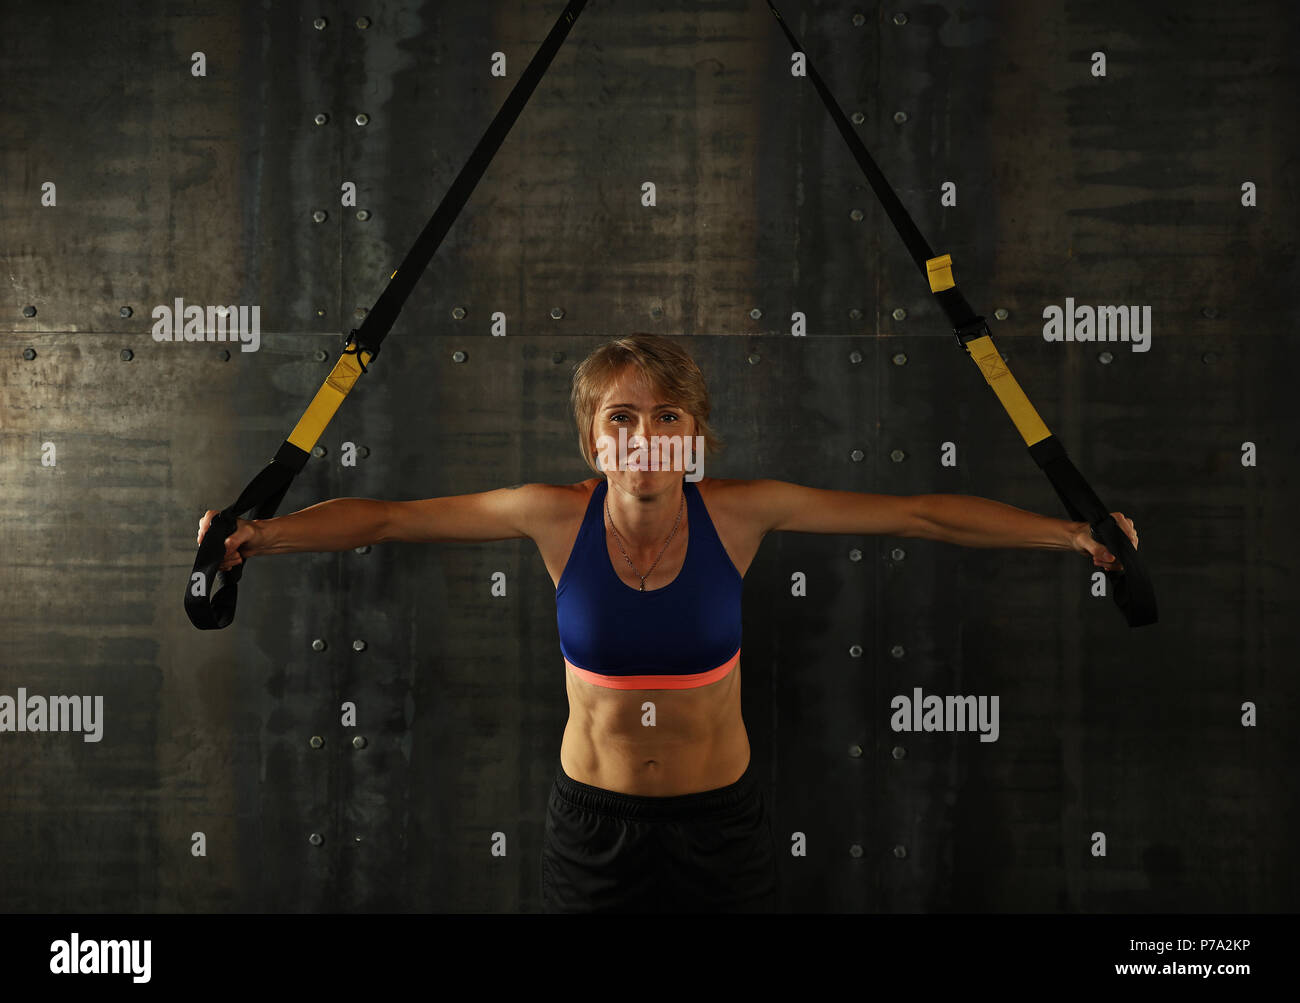 Einen jungen und mittleren Alter athletische Frau bei crossfit Schulung, Training mit TRX Suspension fitness Bänder über dunklen Hintergrund, Vorderansicht, Blick auf c Stockfoto